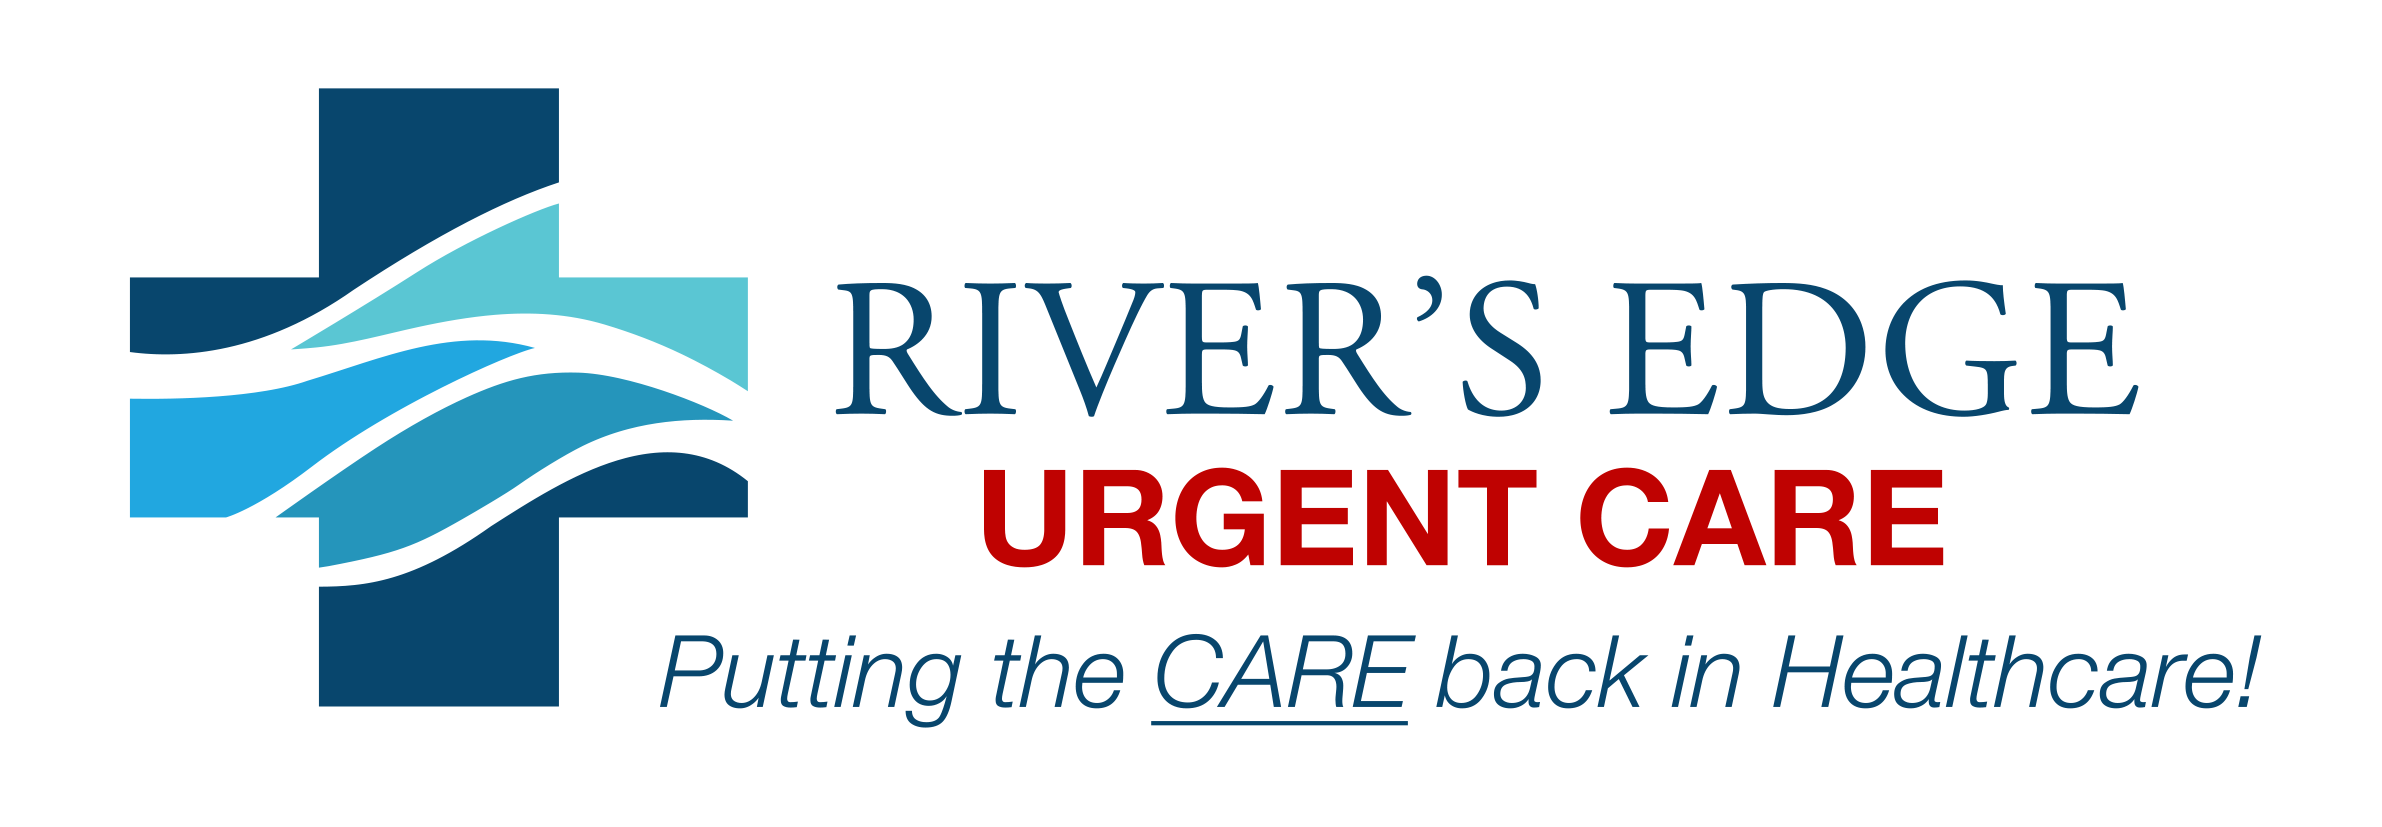 River's Edge DPC urgent care